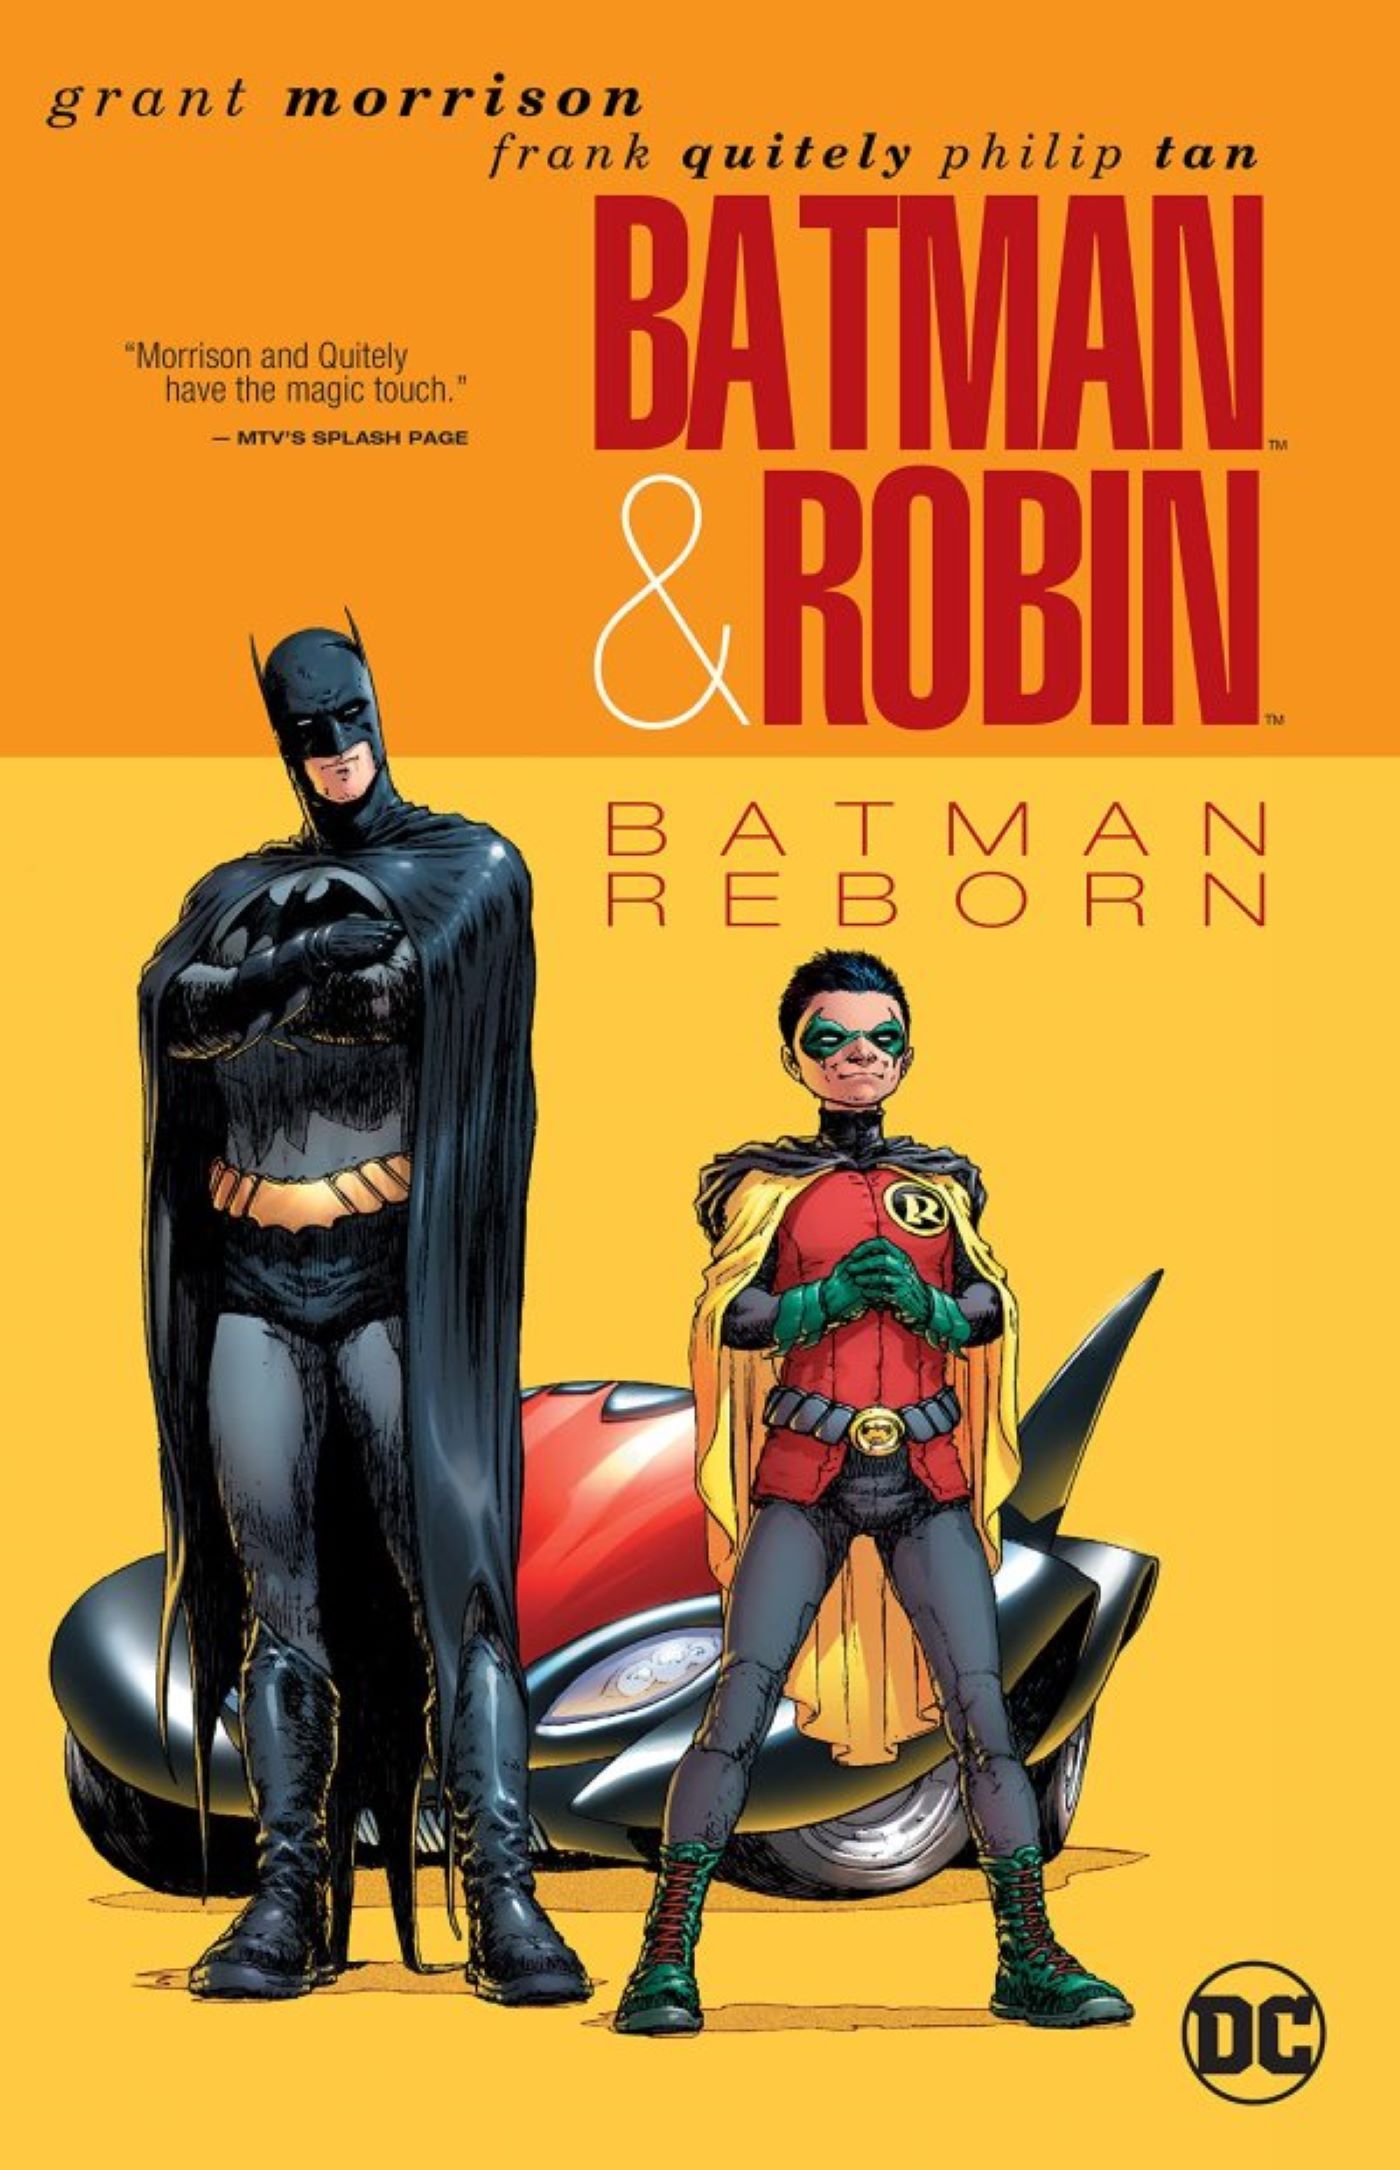 Capa de Batman & Robin Batman Reborn com Batmóvel